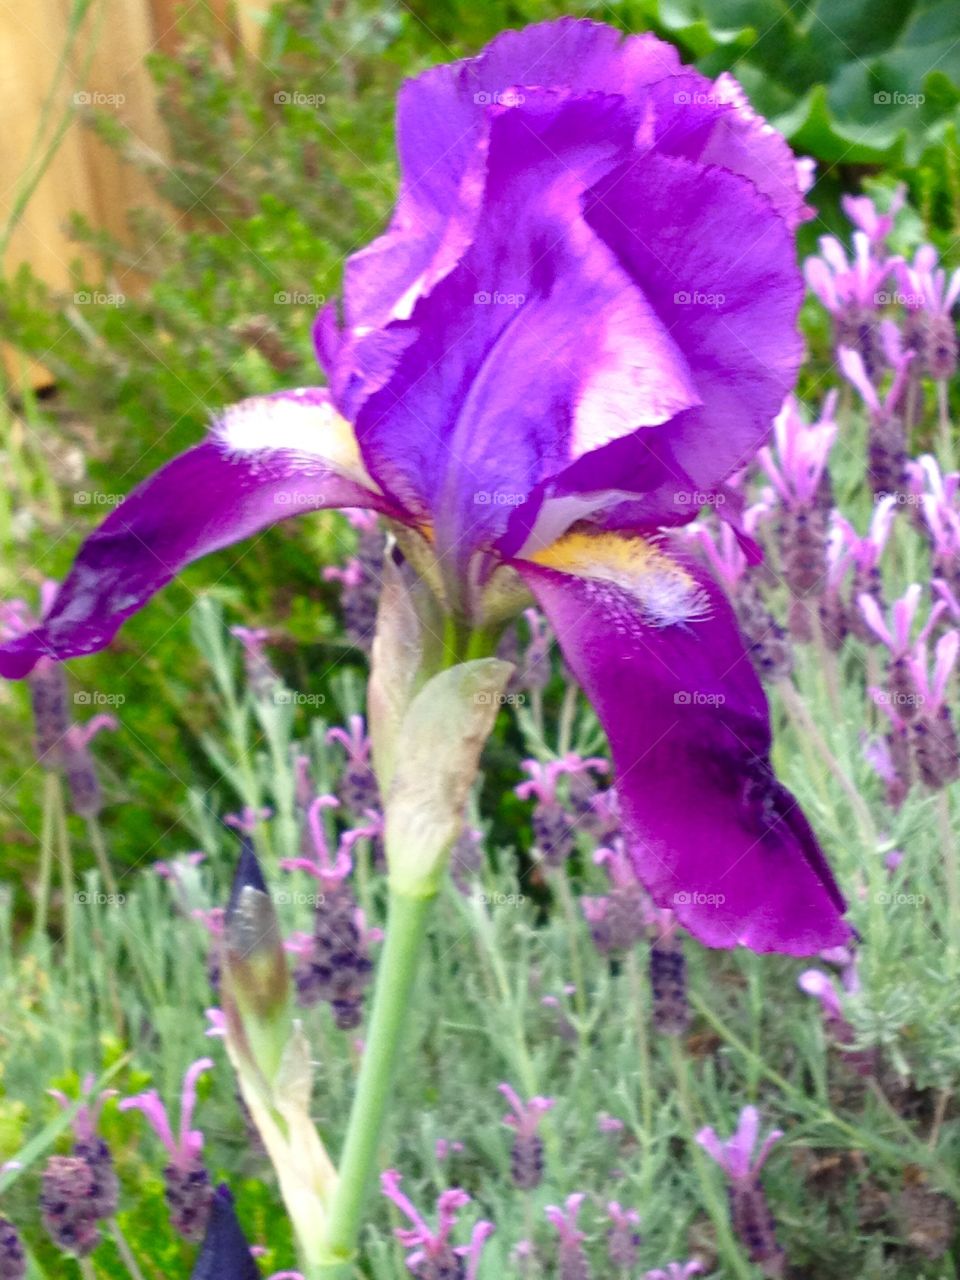 Iris. Iris